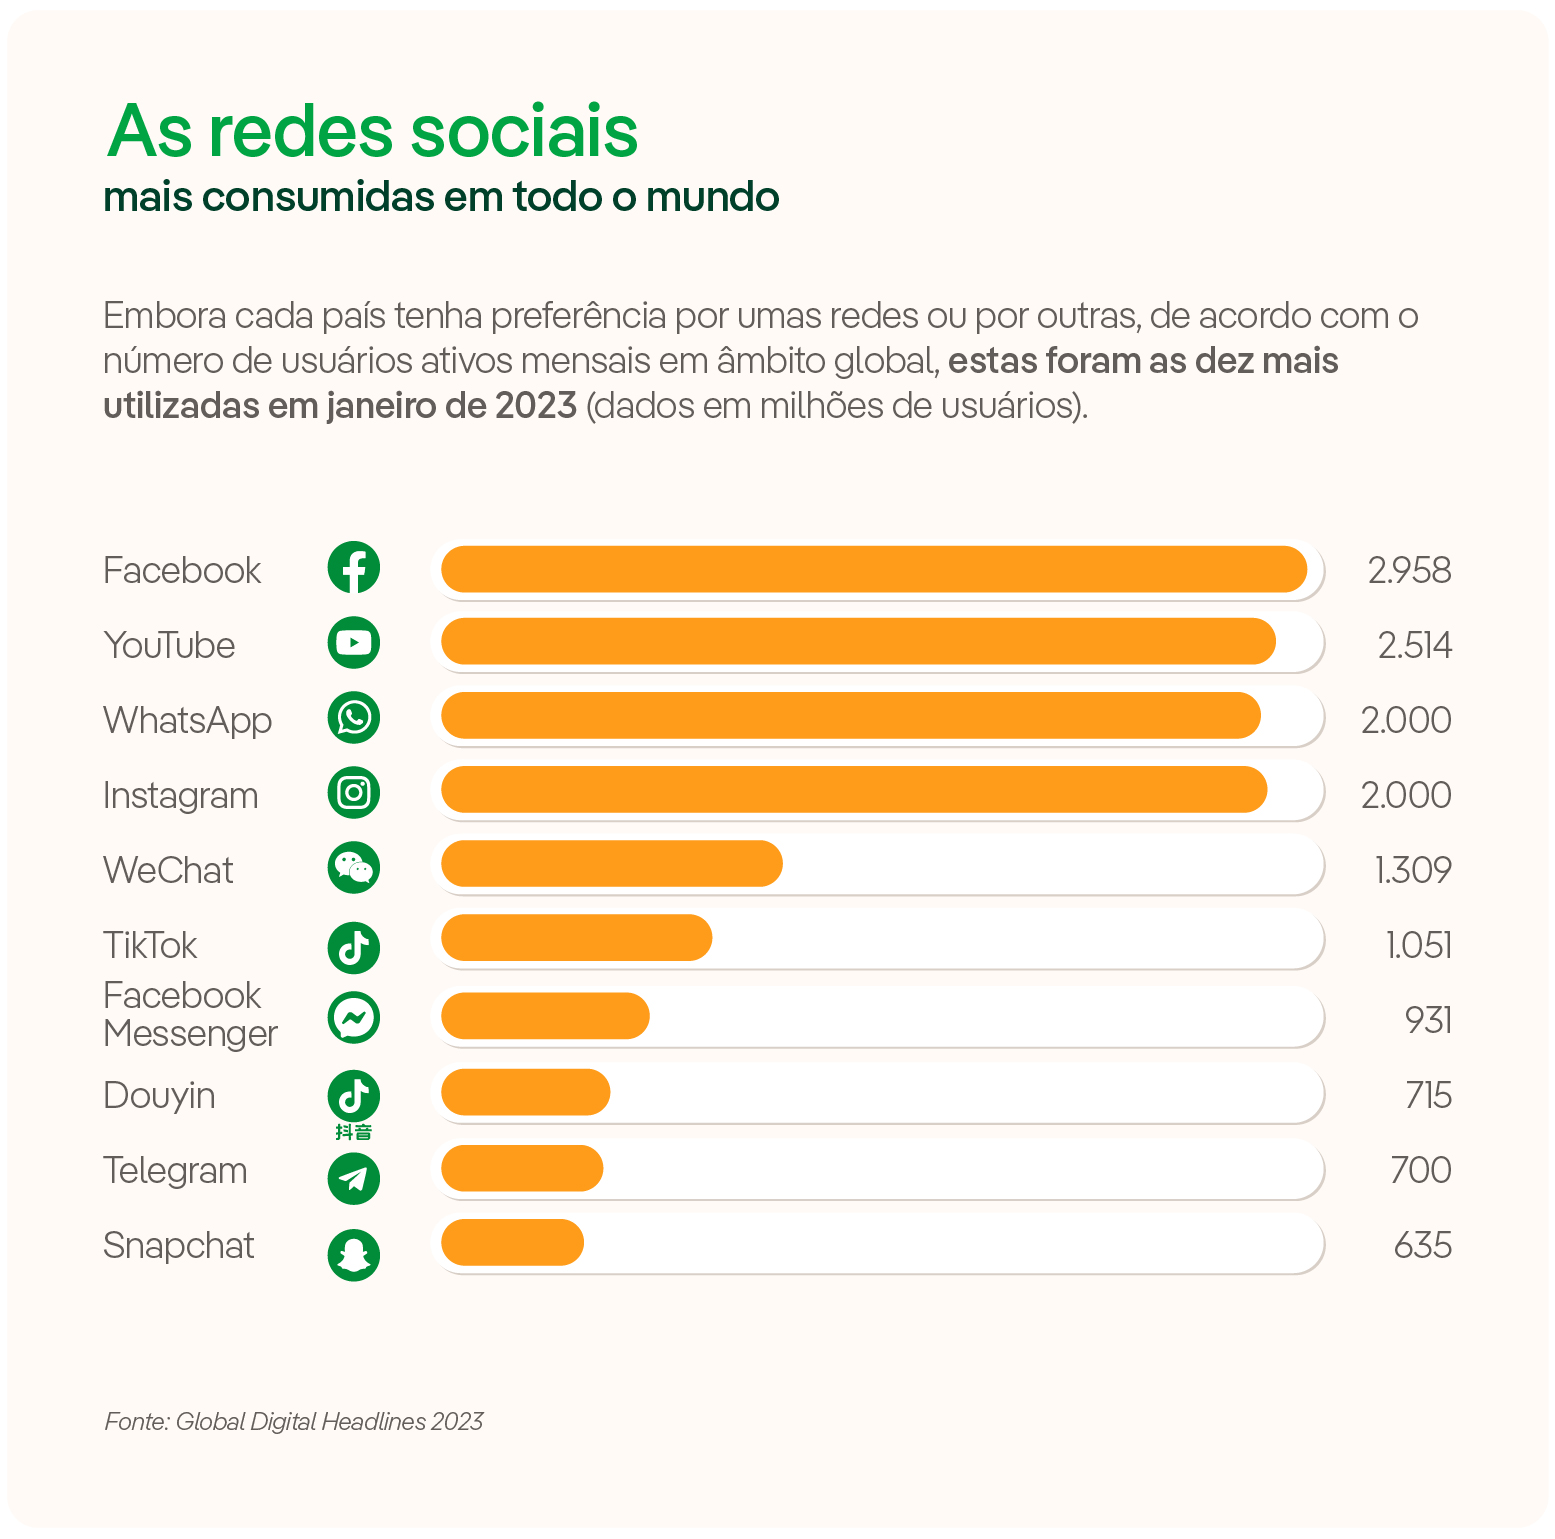 As redes sociais mais consumidas em todo o mundo.